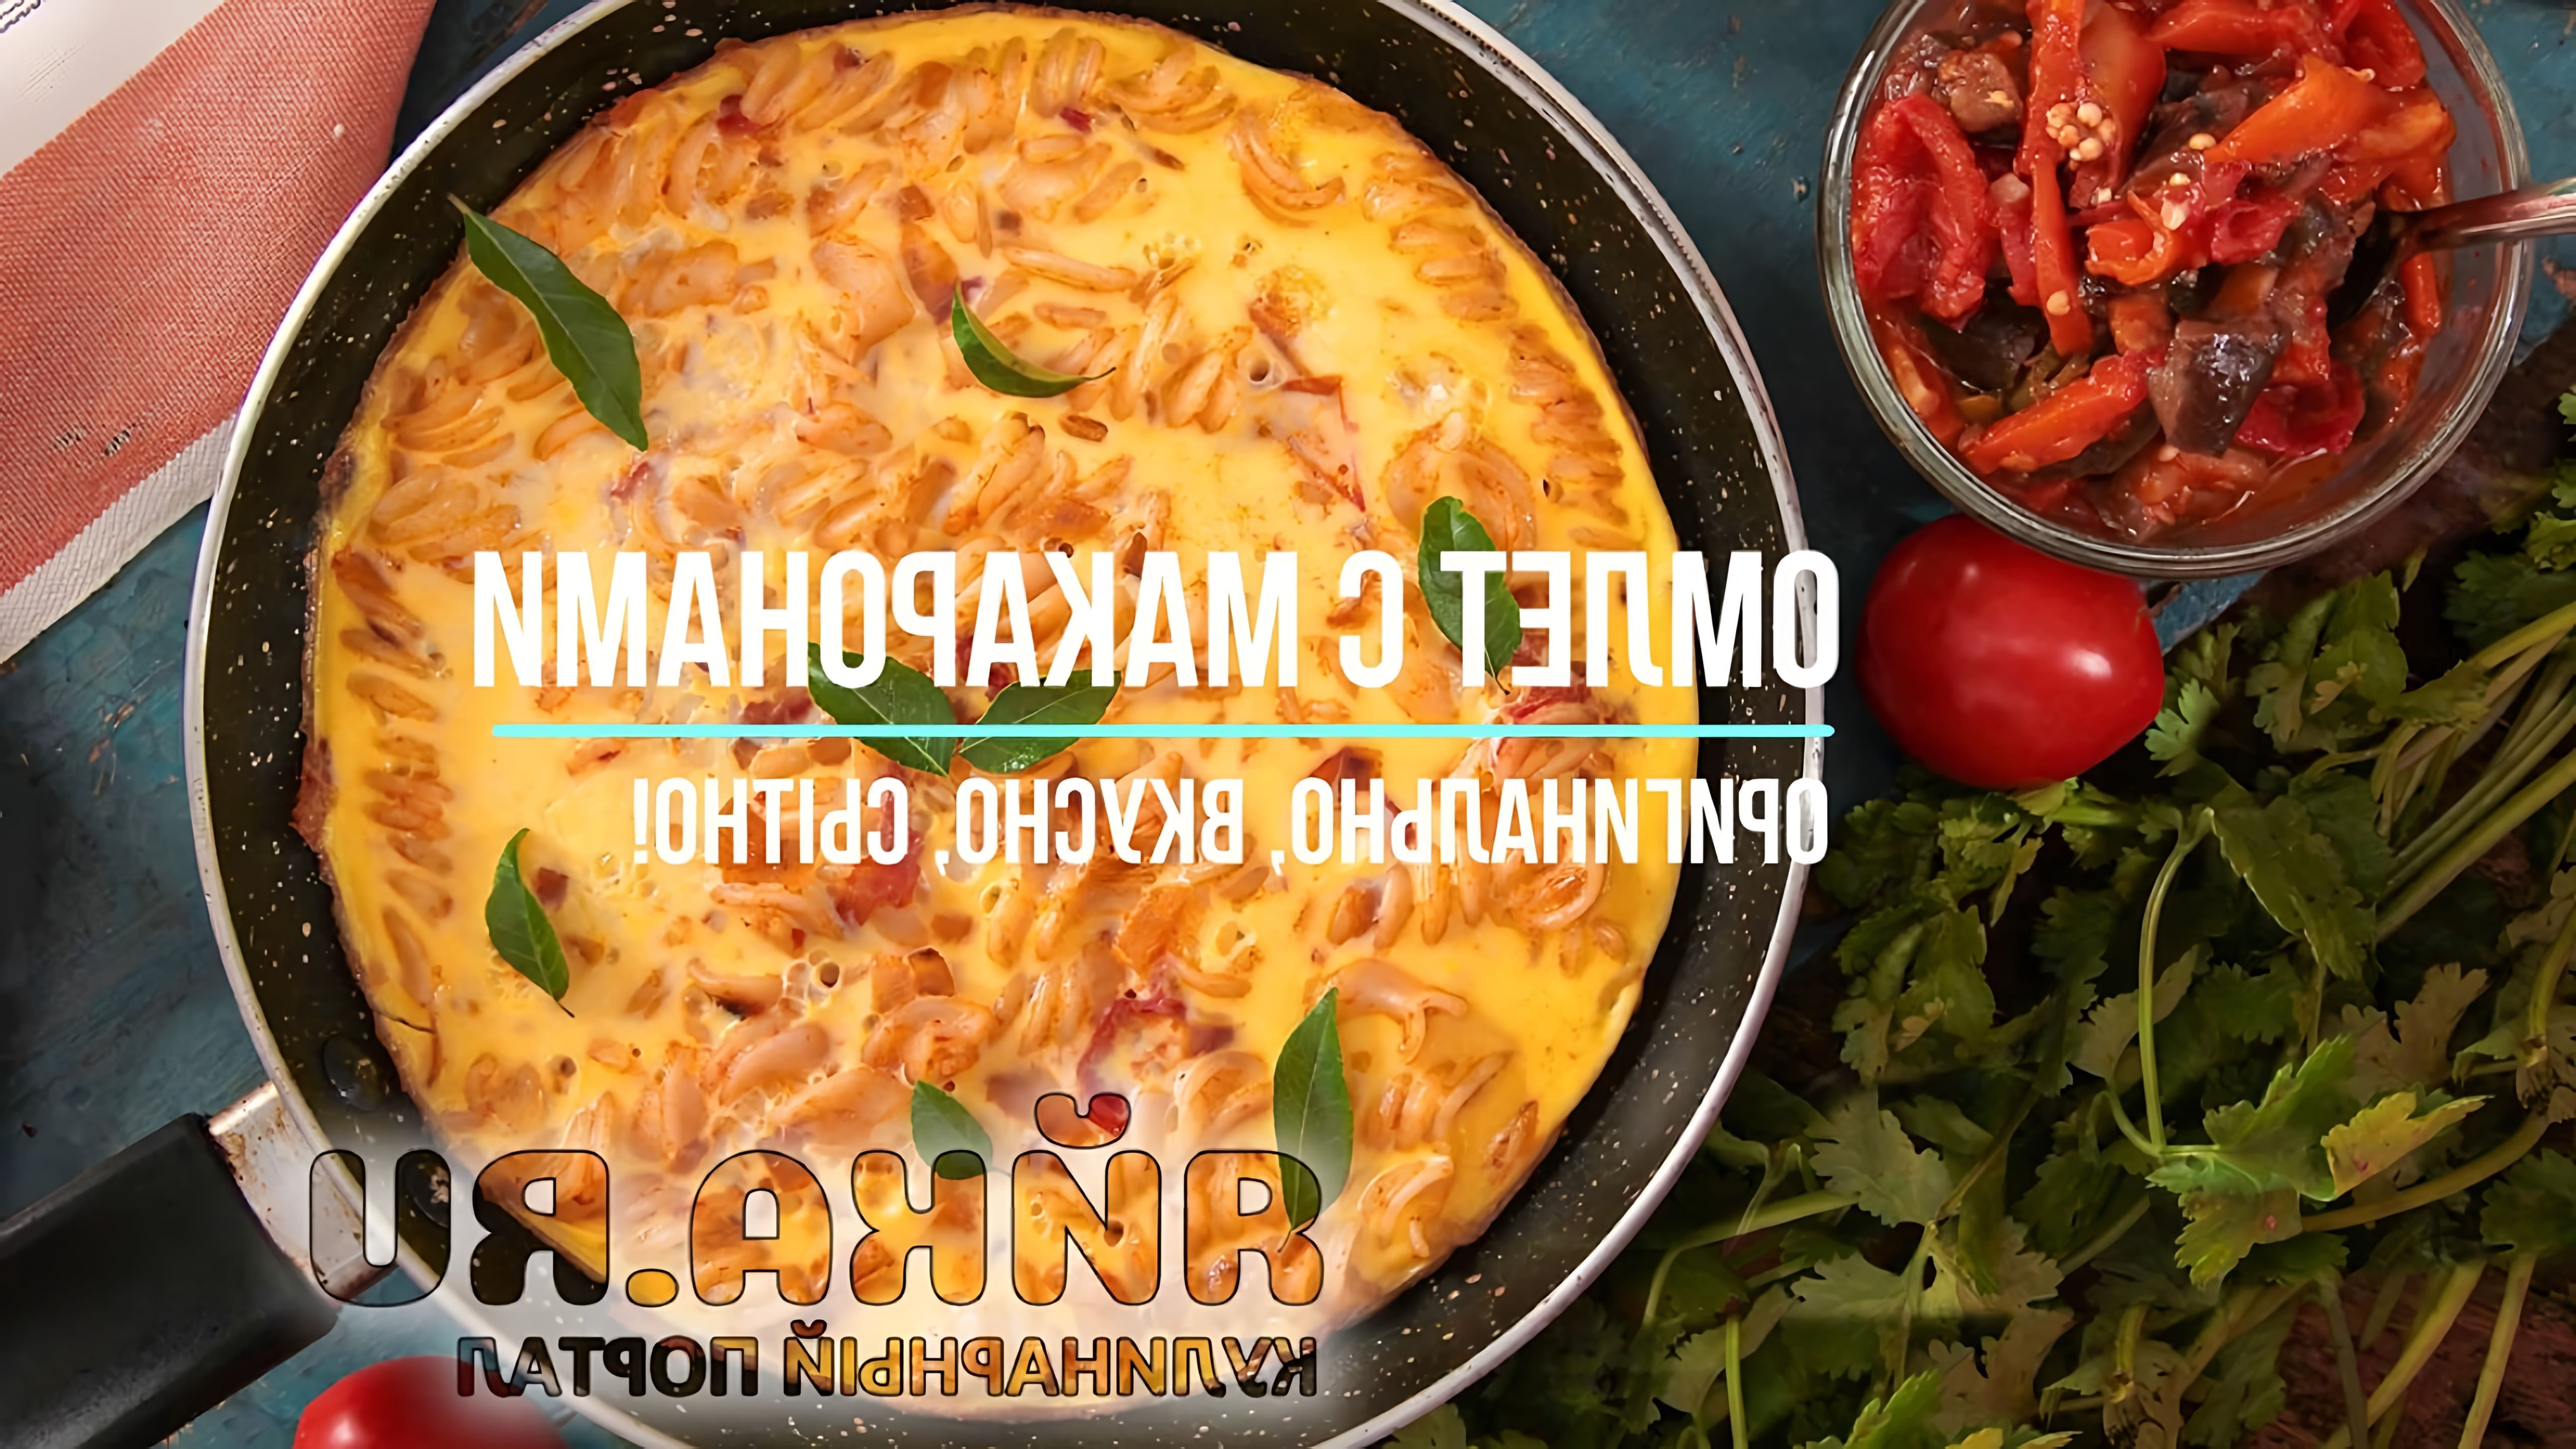 "Омлет с макаронами" - это видео-ролик, который демонстрирует процесс приготовления вкусного и питательного блюда